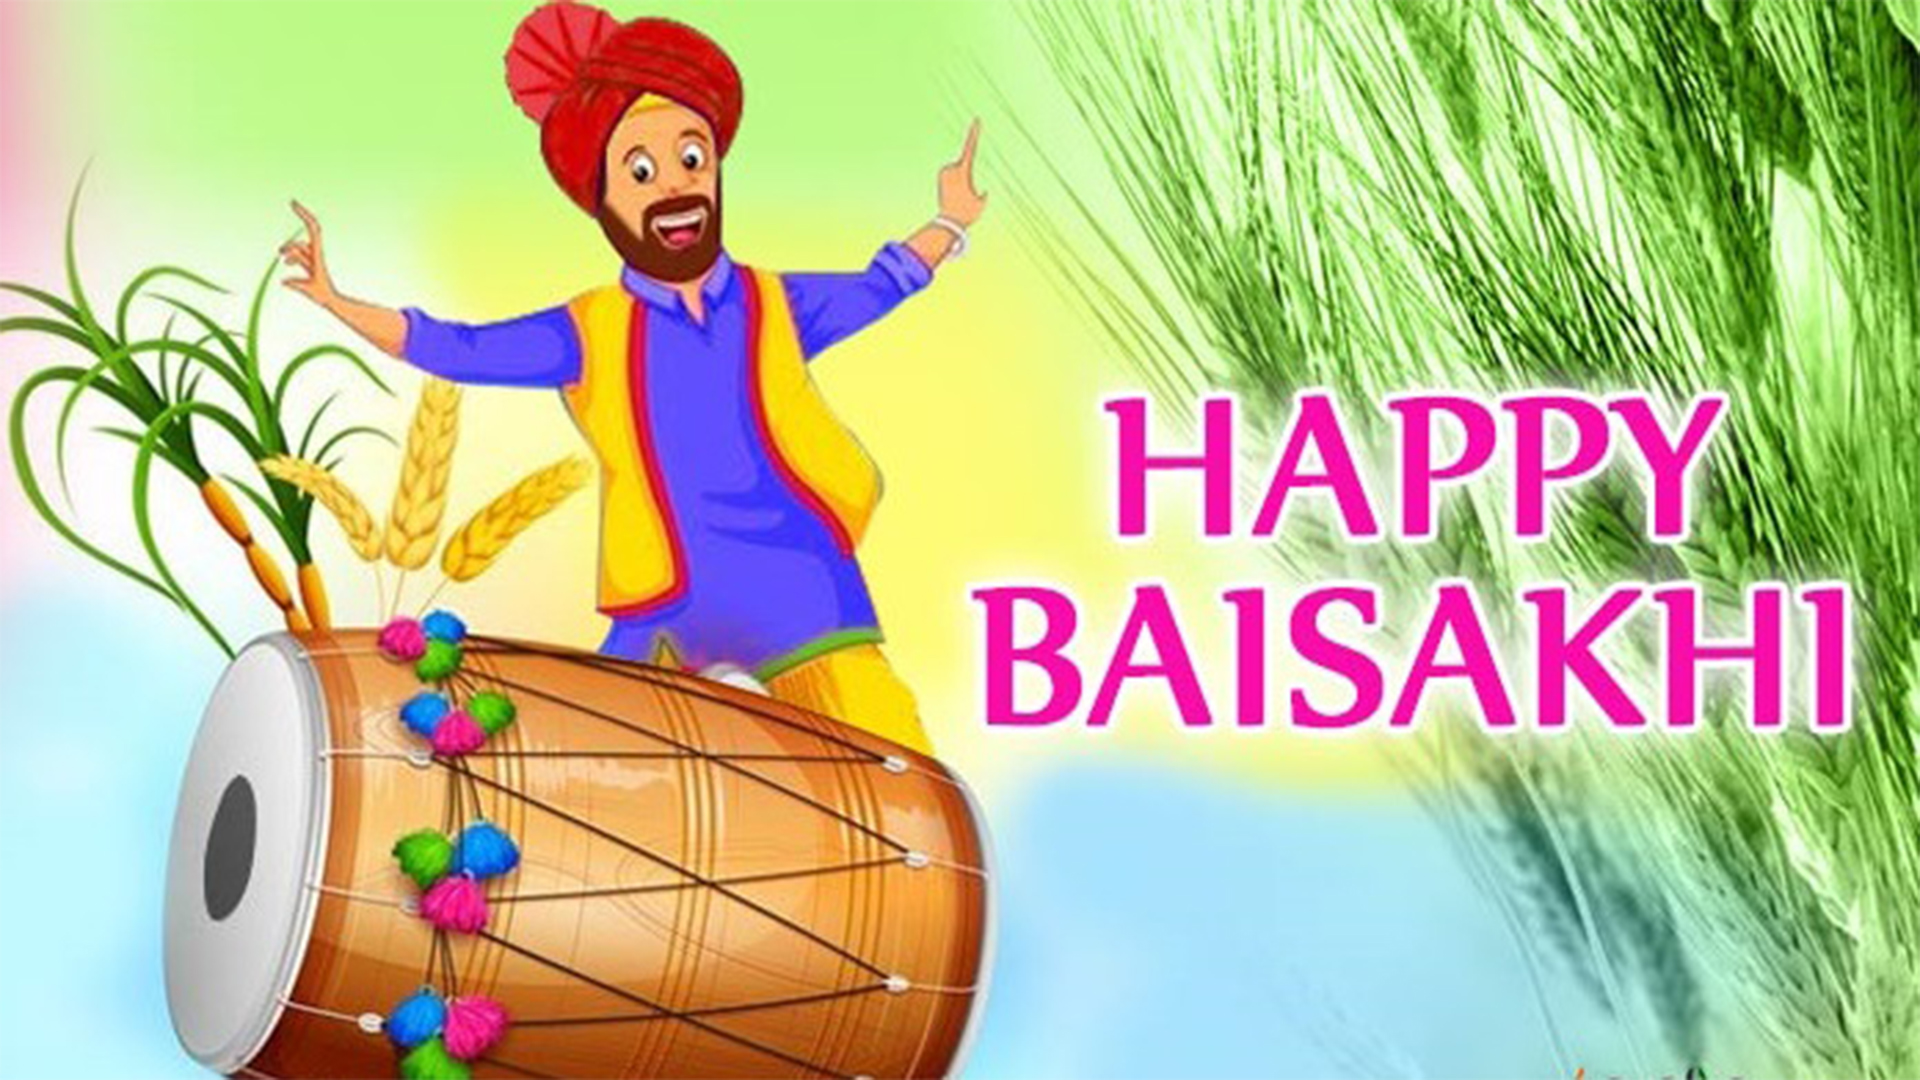 Happy Baisakhi Wishes & Greetings Images Vaisakhi Festival